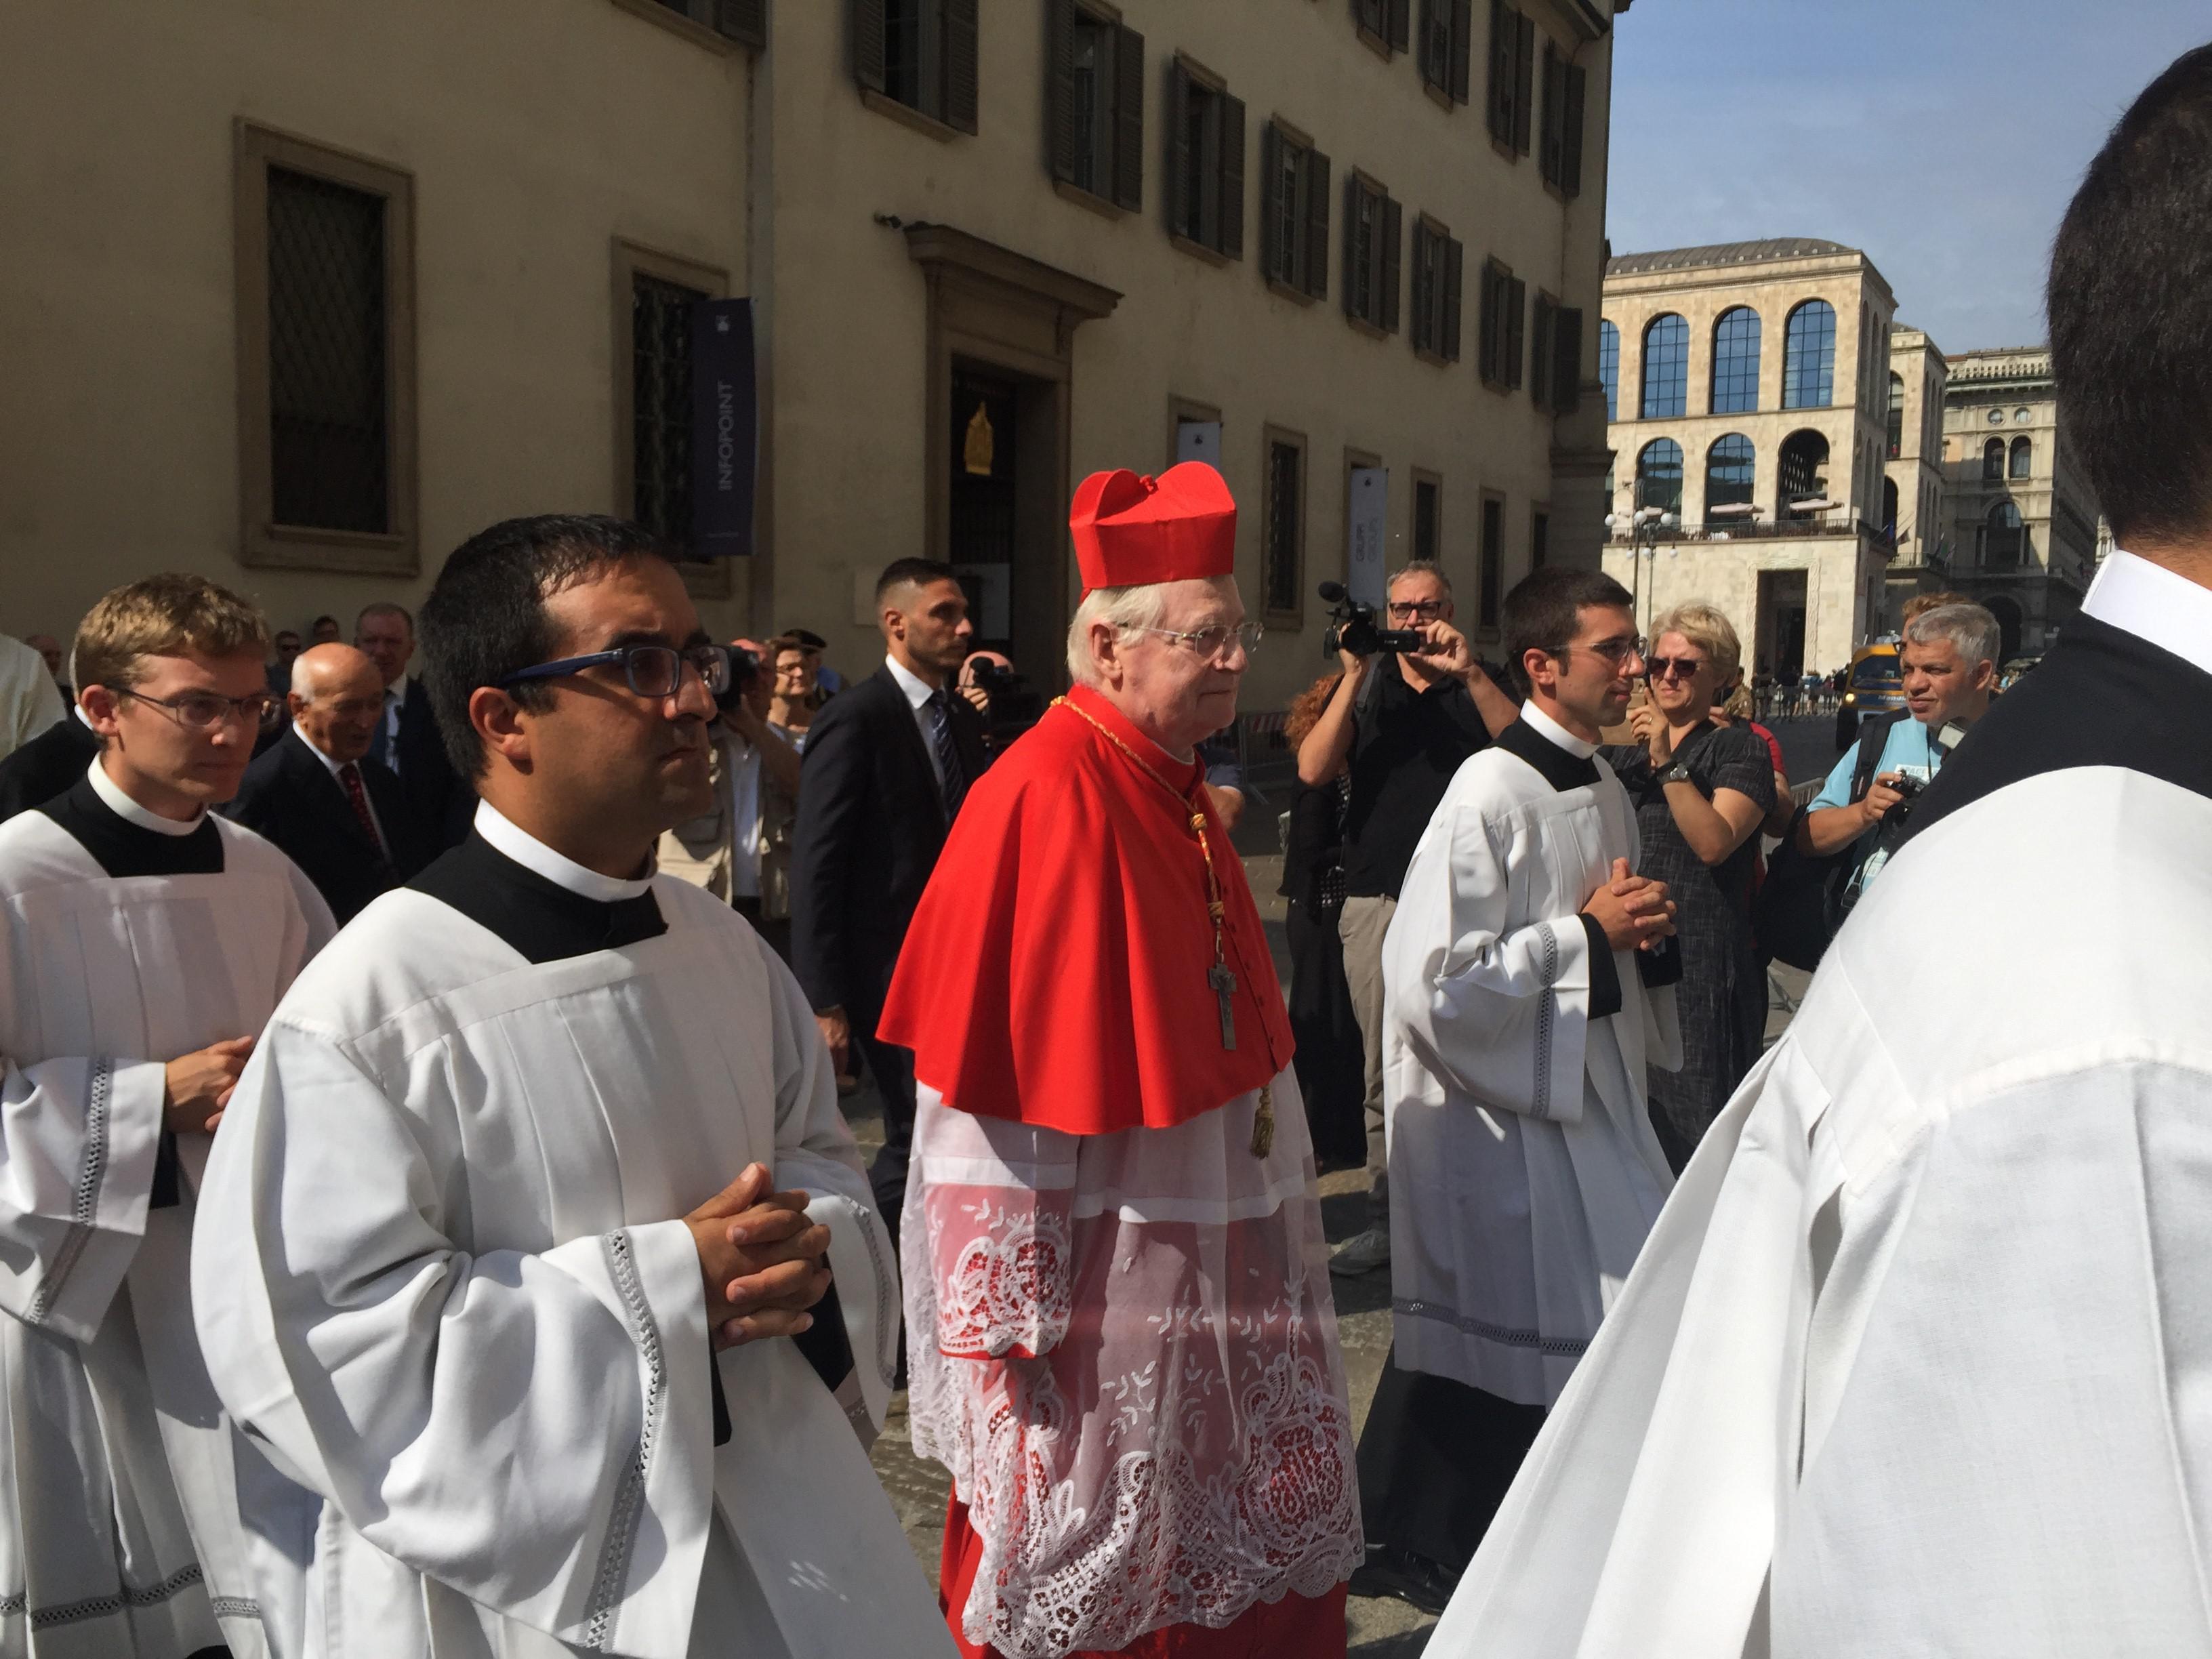 Il cardinale Scola arriva in Duomo